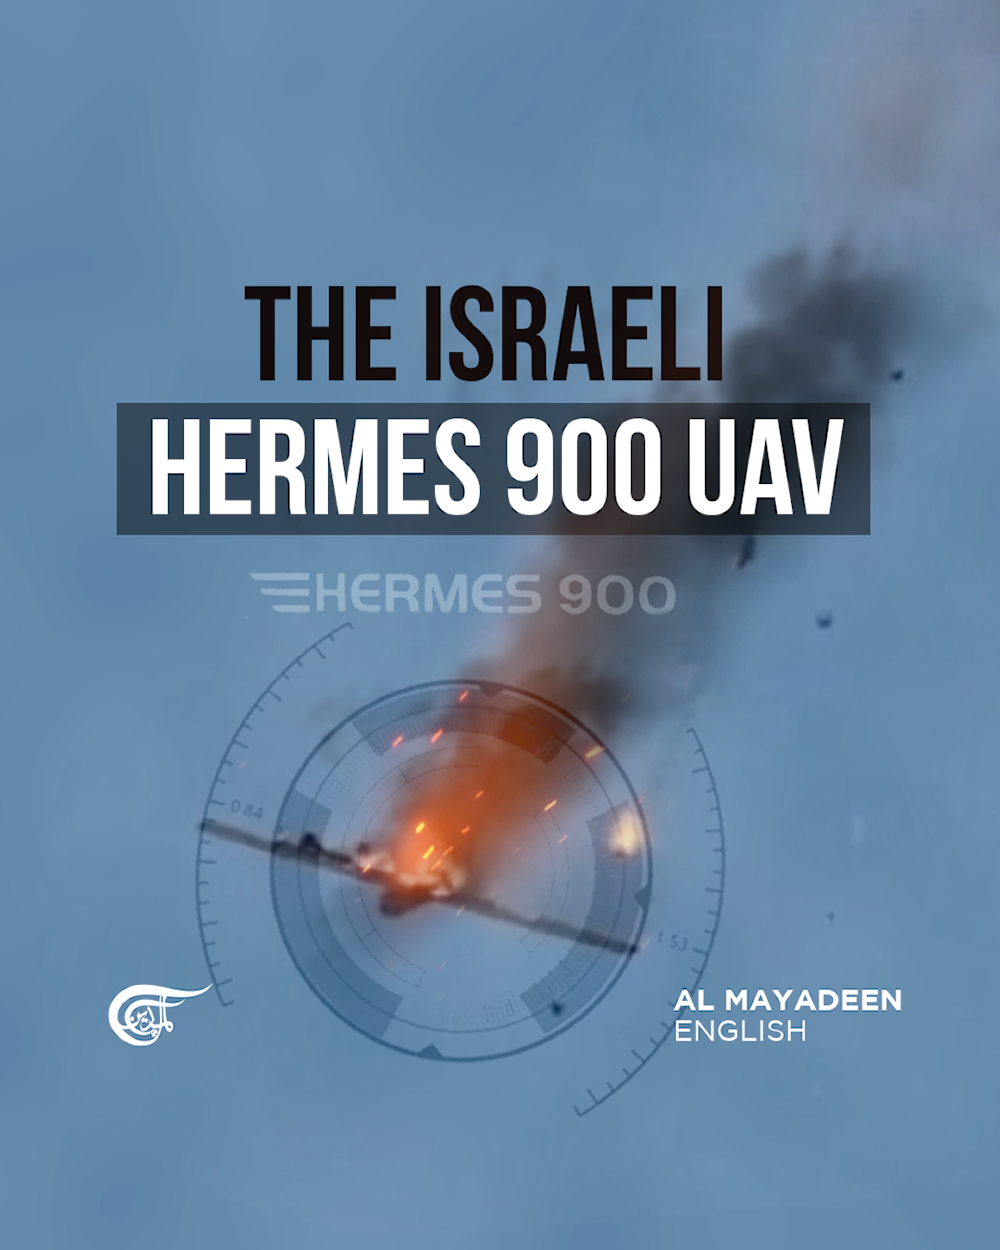 The Israeli Hermes 900 UAV